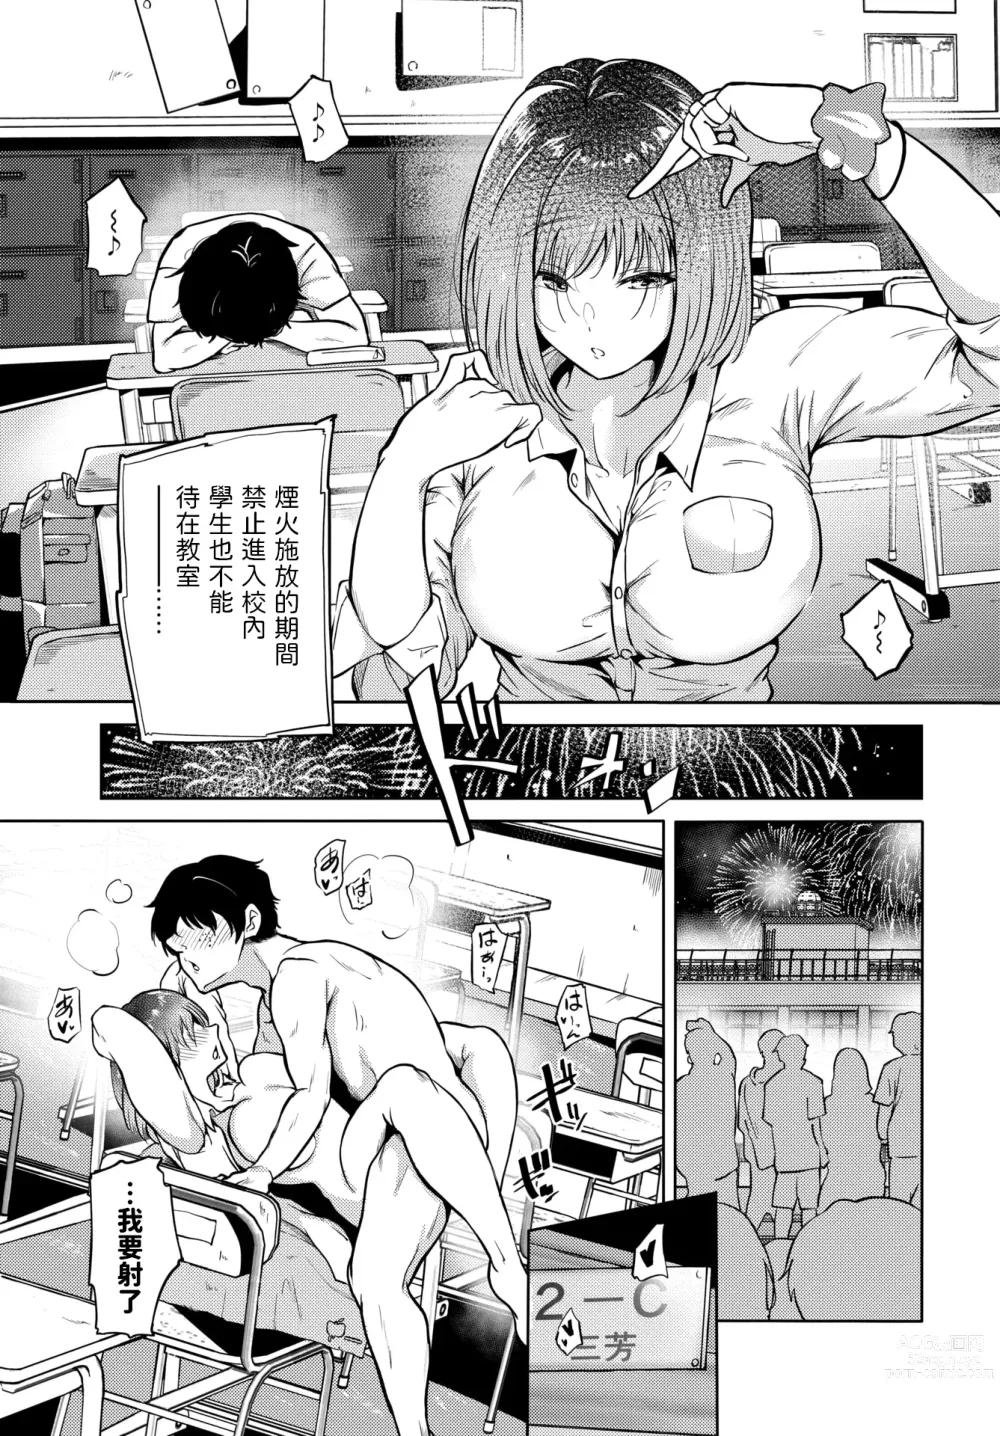 Page 3 of manga Anon